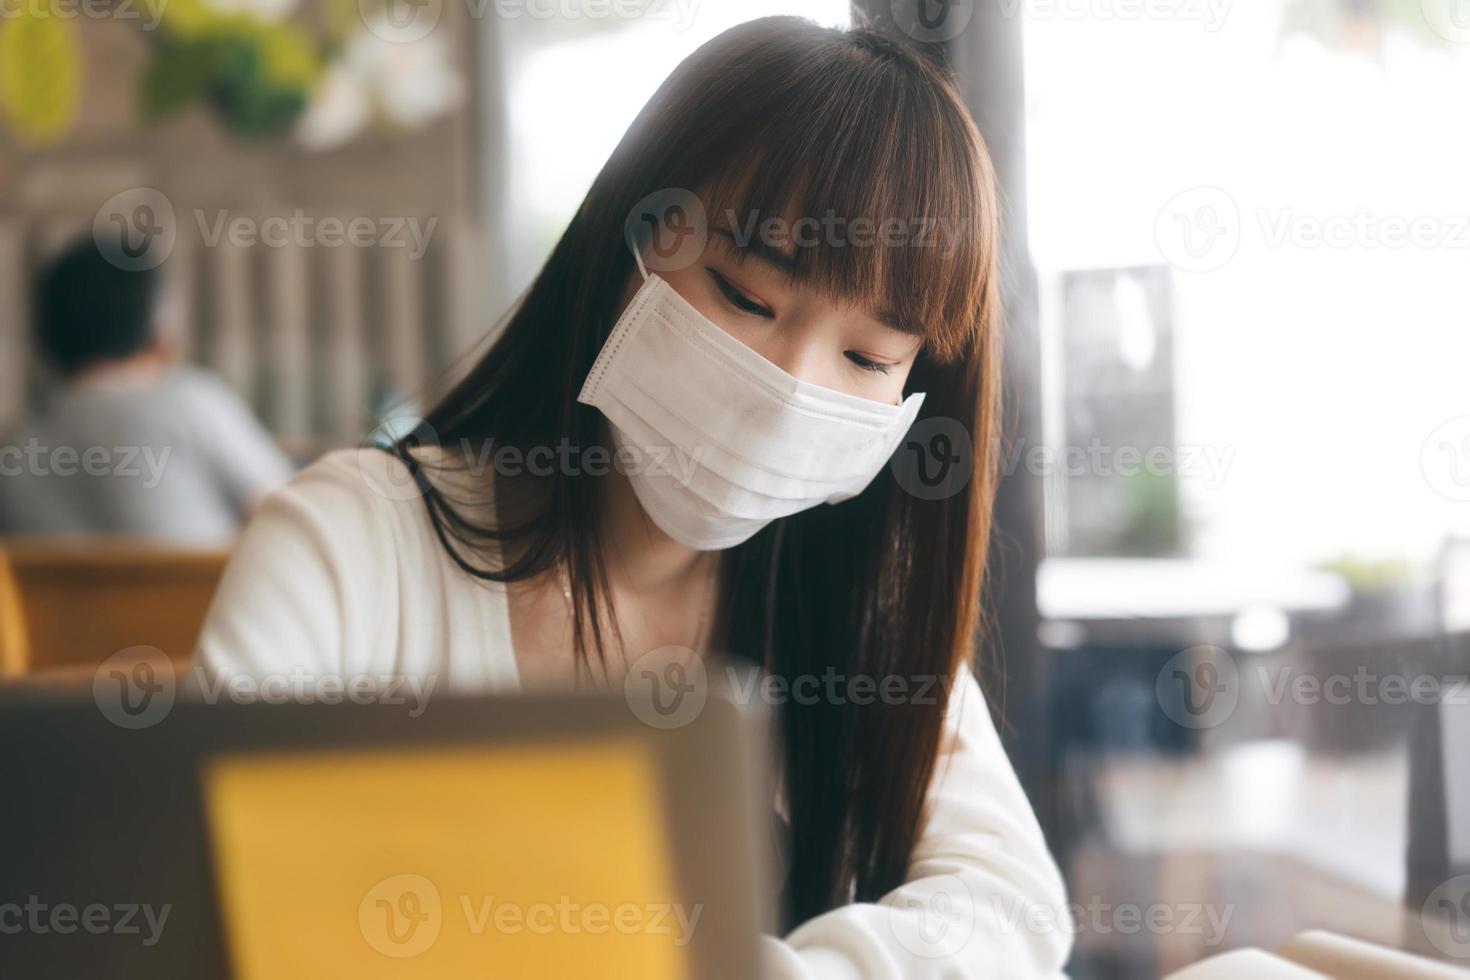 jeune femme asiatique adulte avec masque protecteur pour le virus covid 19 travail et étude au café le jour. photo